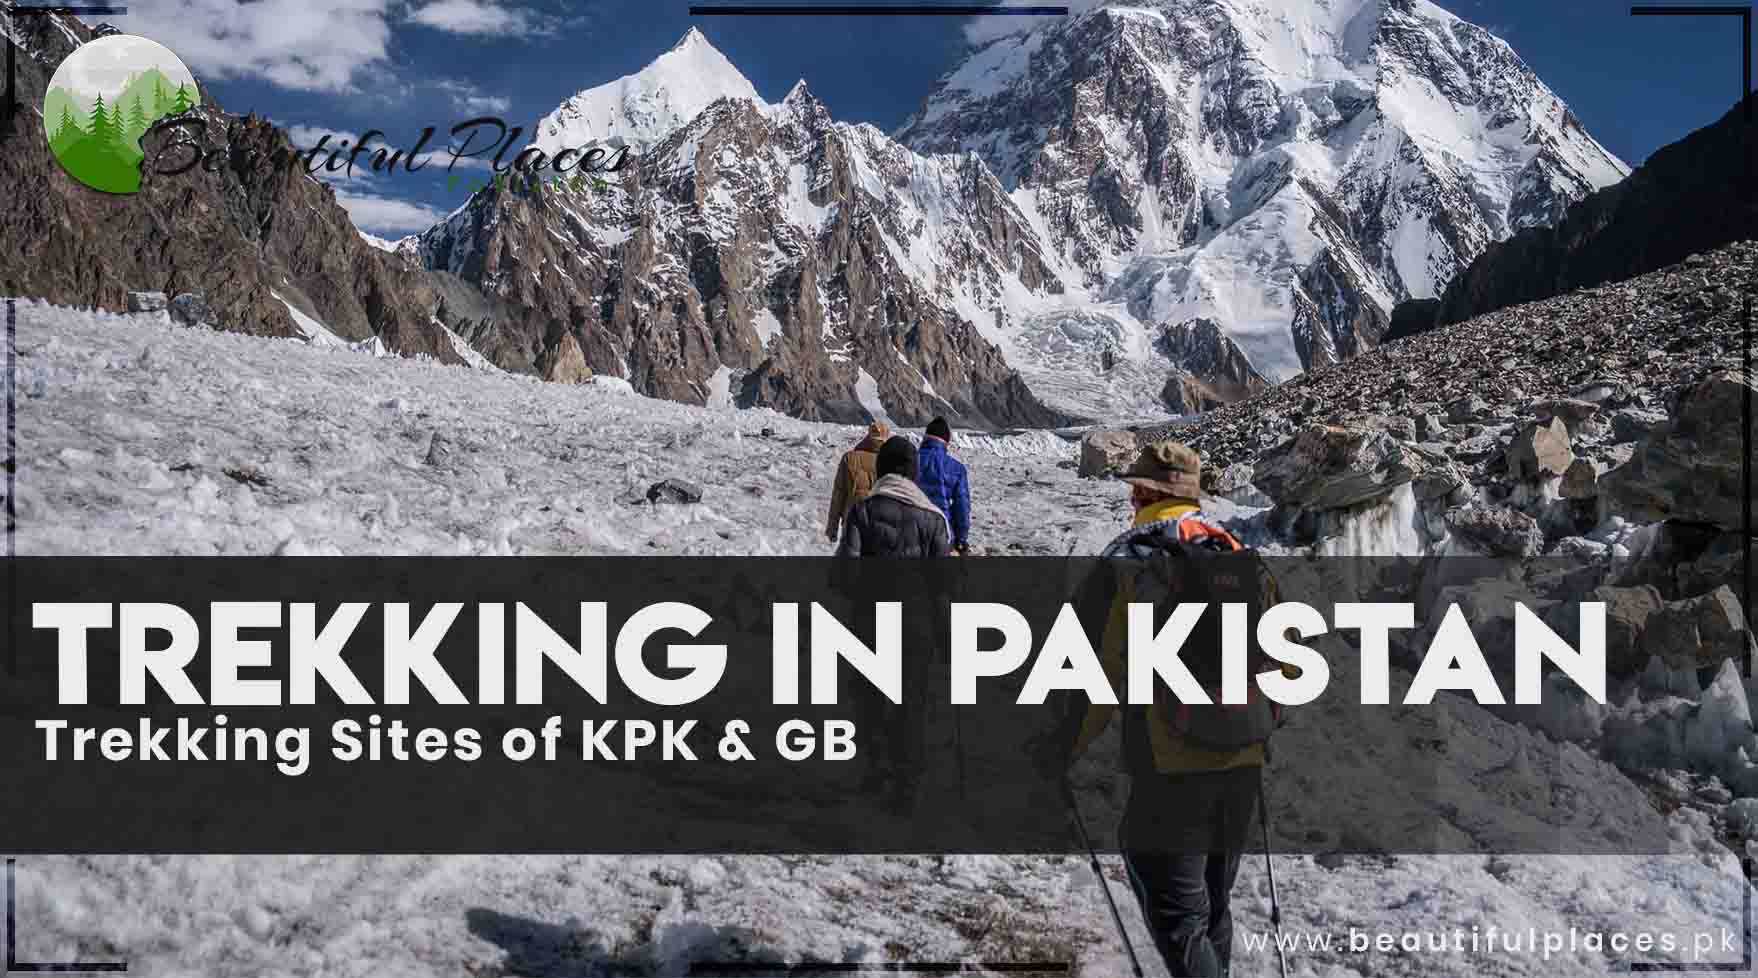 56 Trekking Areas in Pakistan | Trekking Sites of KPK & GB